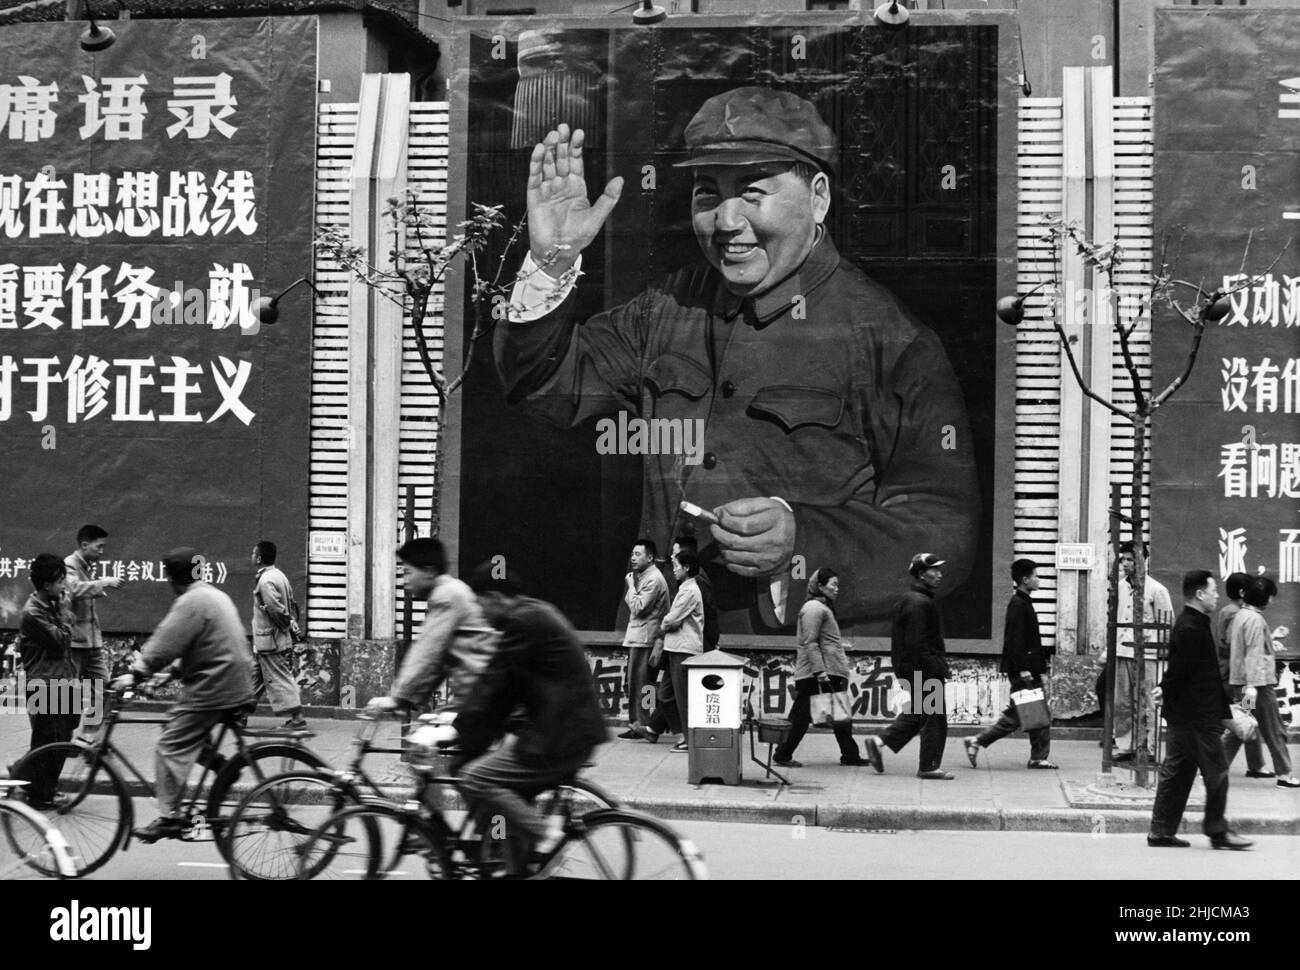 Grandi poster lungo Nanking Street a Shanghai, Cina. I poster sono stati utilizzati all'interno di questo importante quartiere commerciale fino alla primavera del 1967. Foto Stock